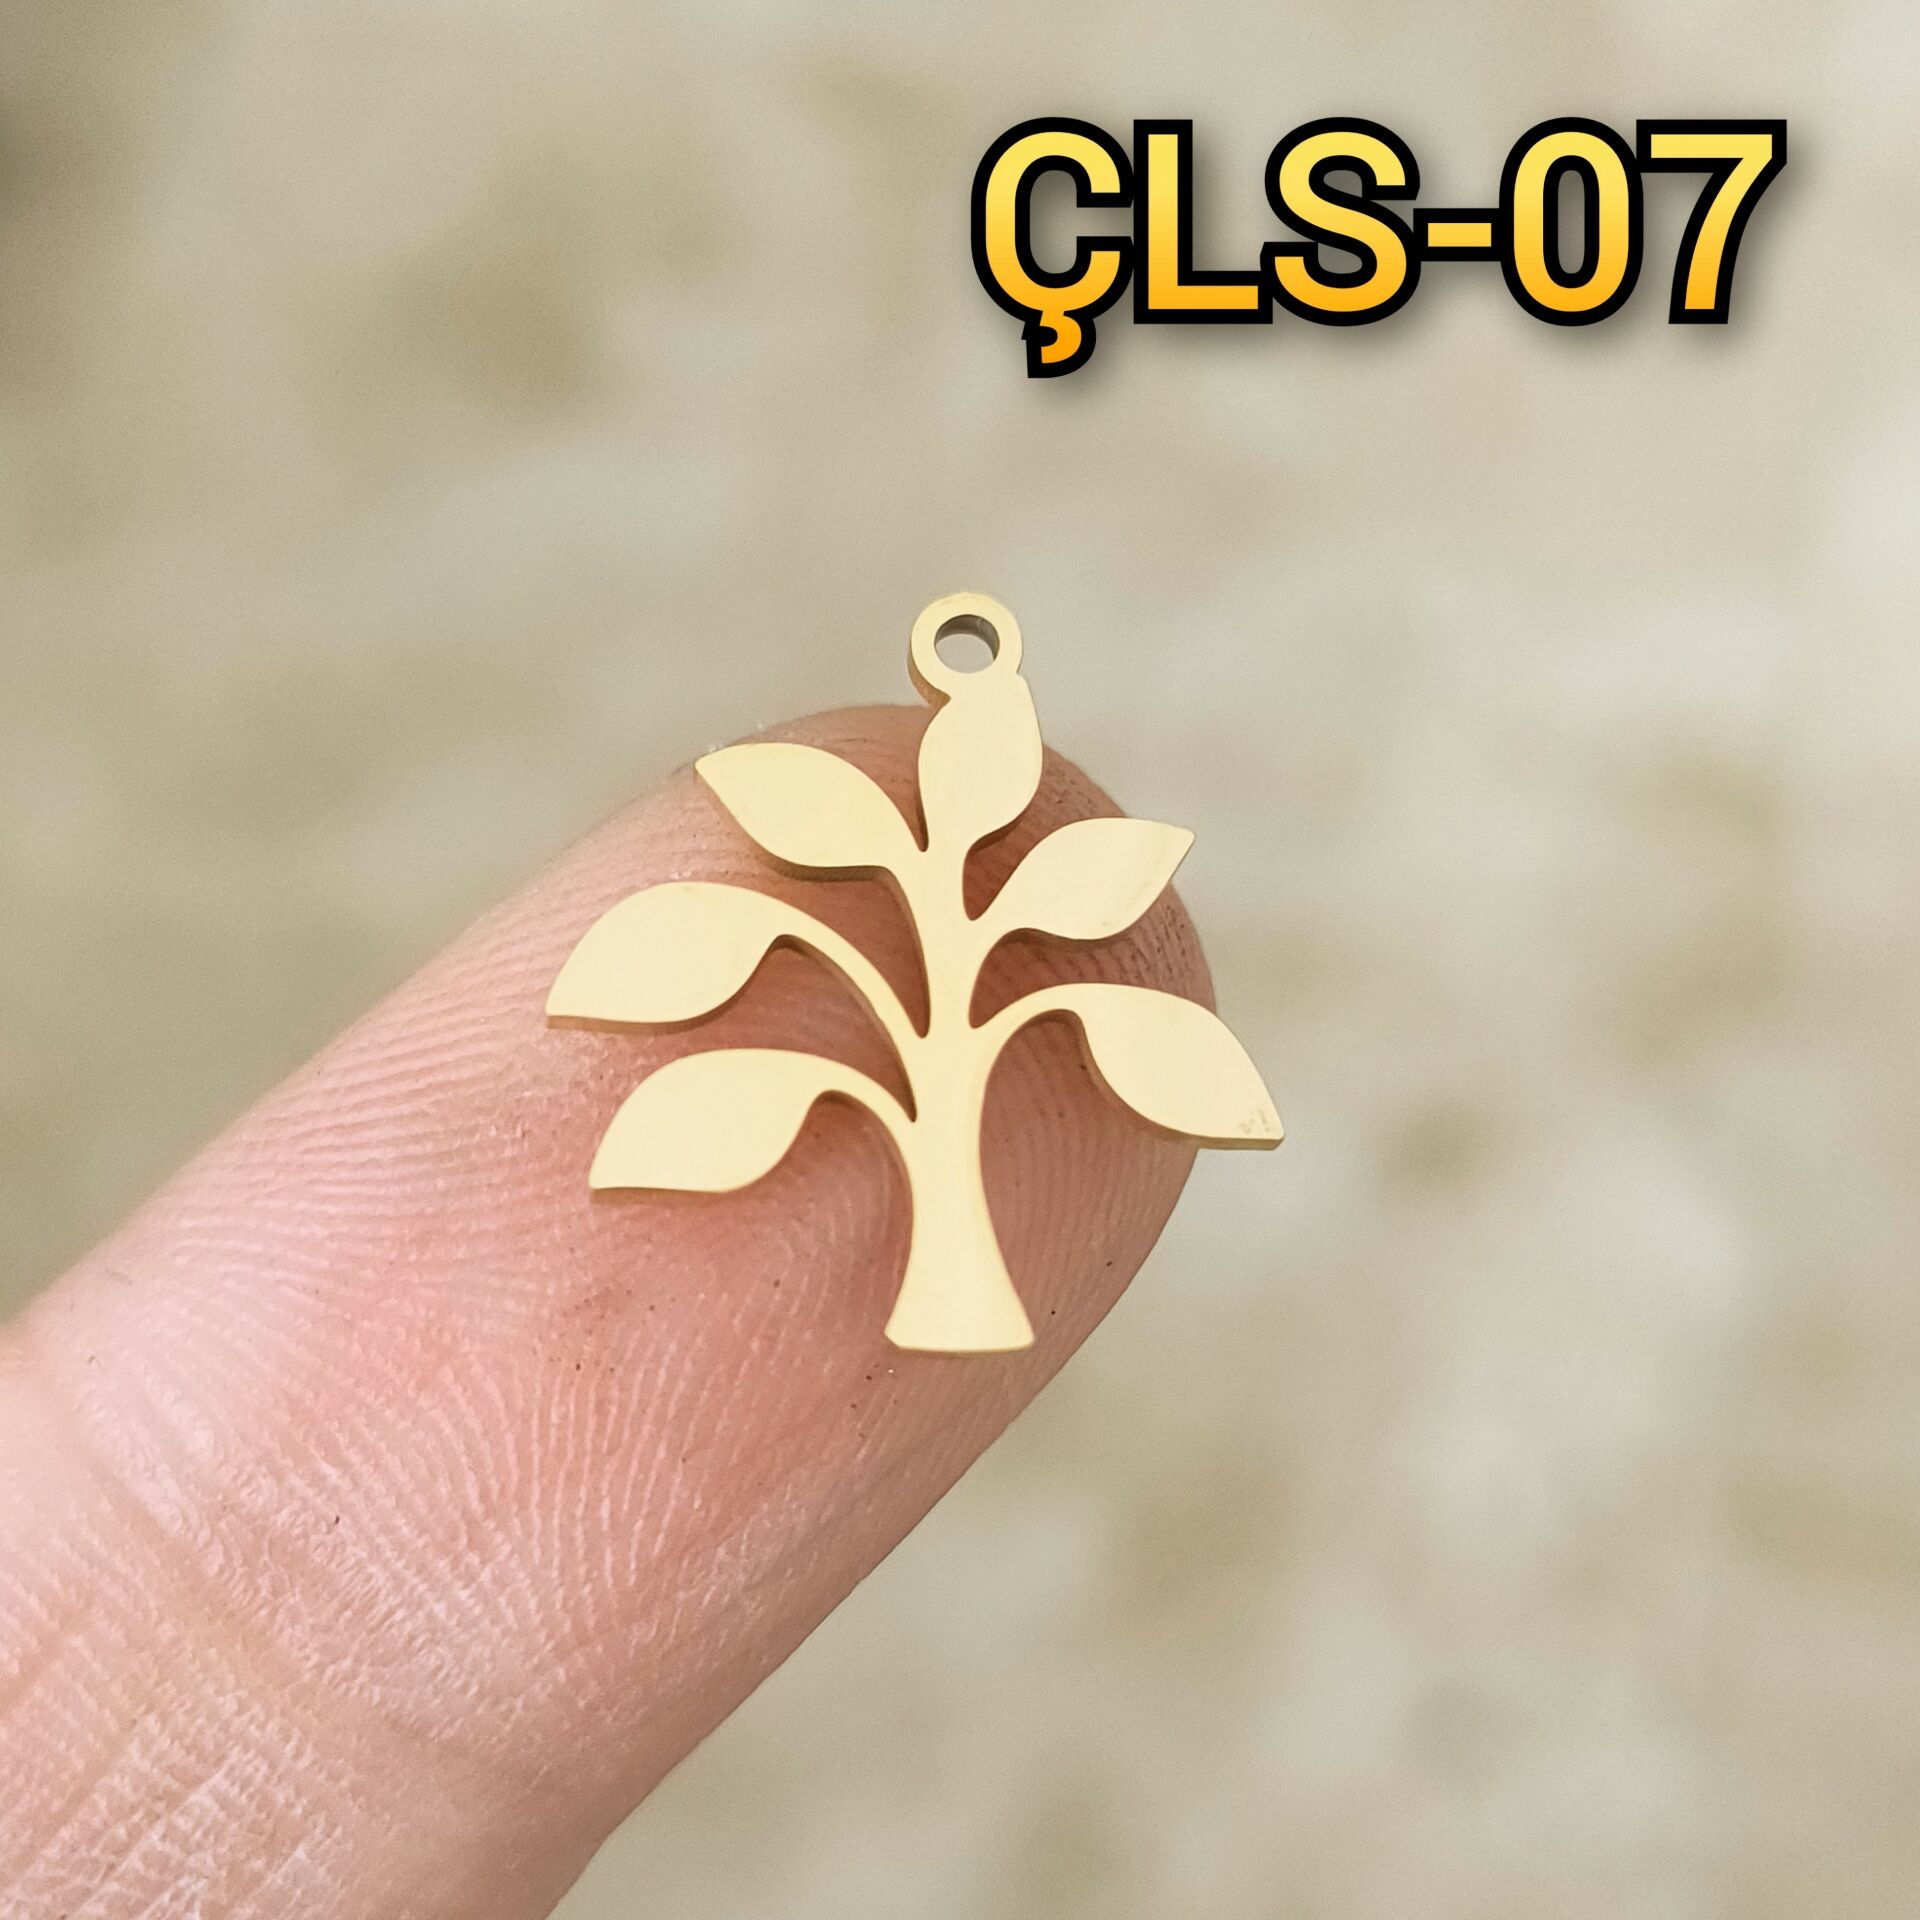 ÇLS-07 Altın Renk 304 Çelik Ağaç Sallantı - Kolye Ucu